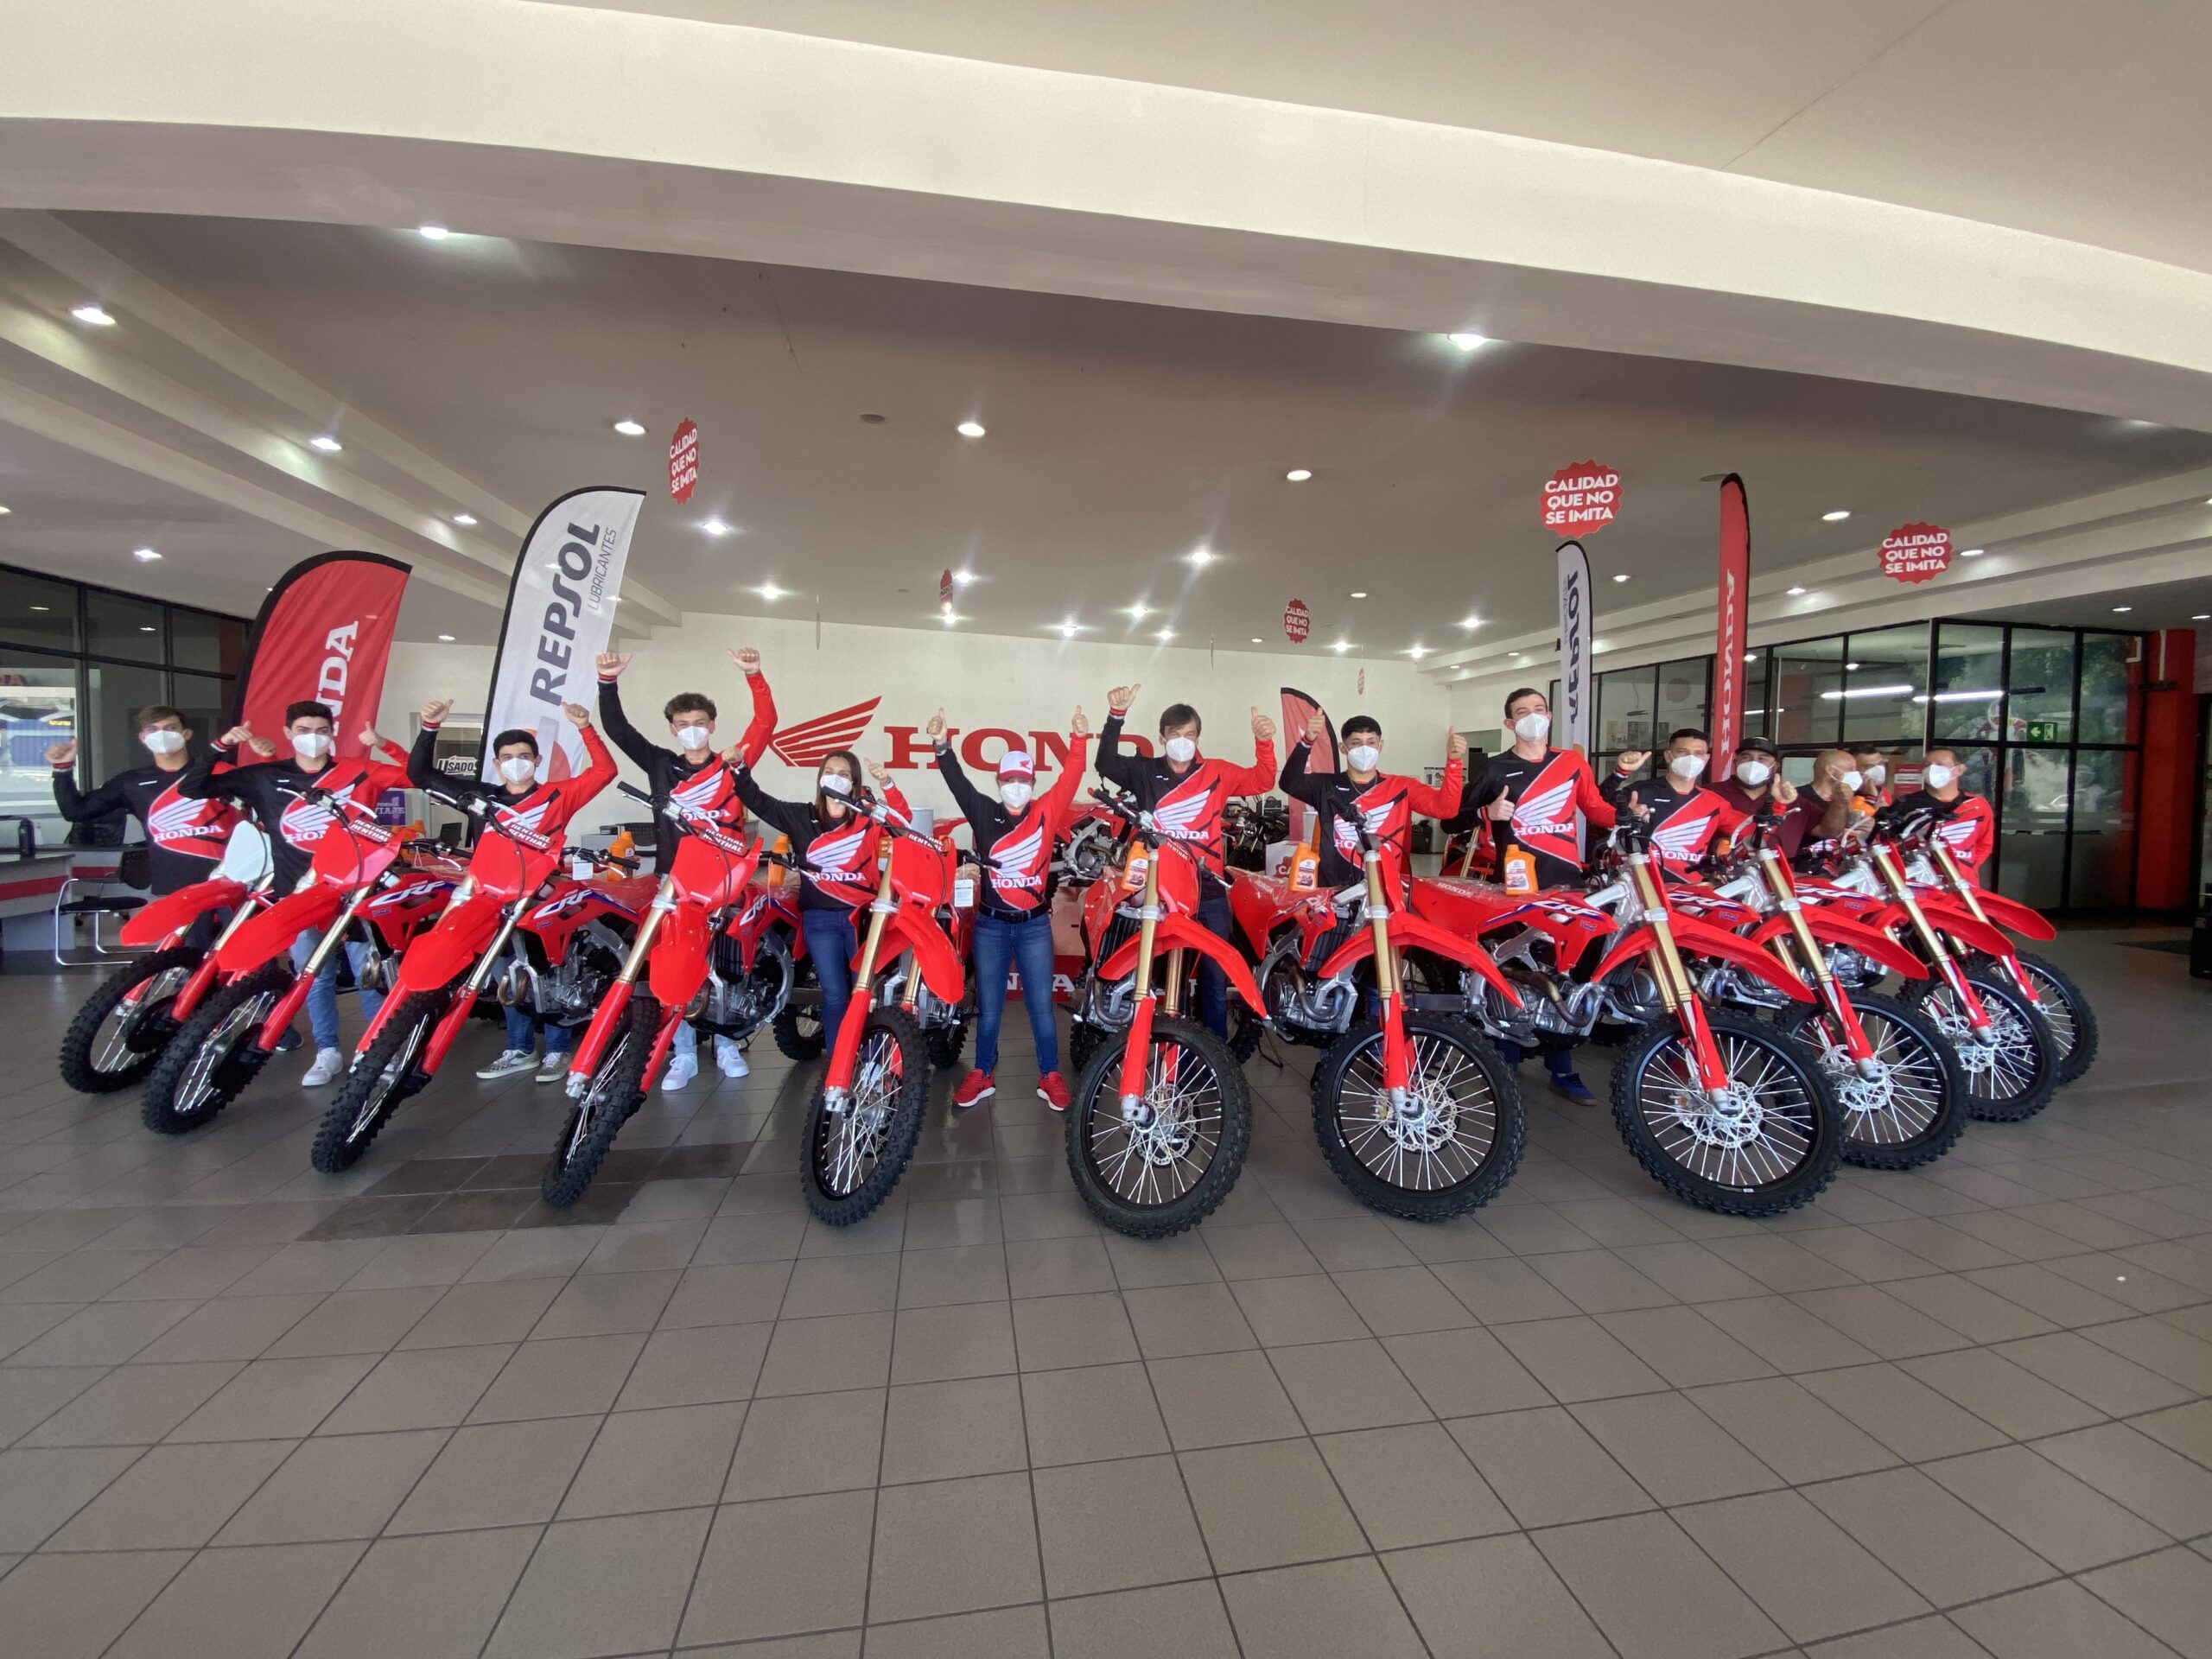 Equipo de Motocross Honda Repsol Pasión MX llega a las pistas